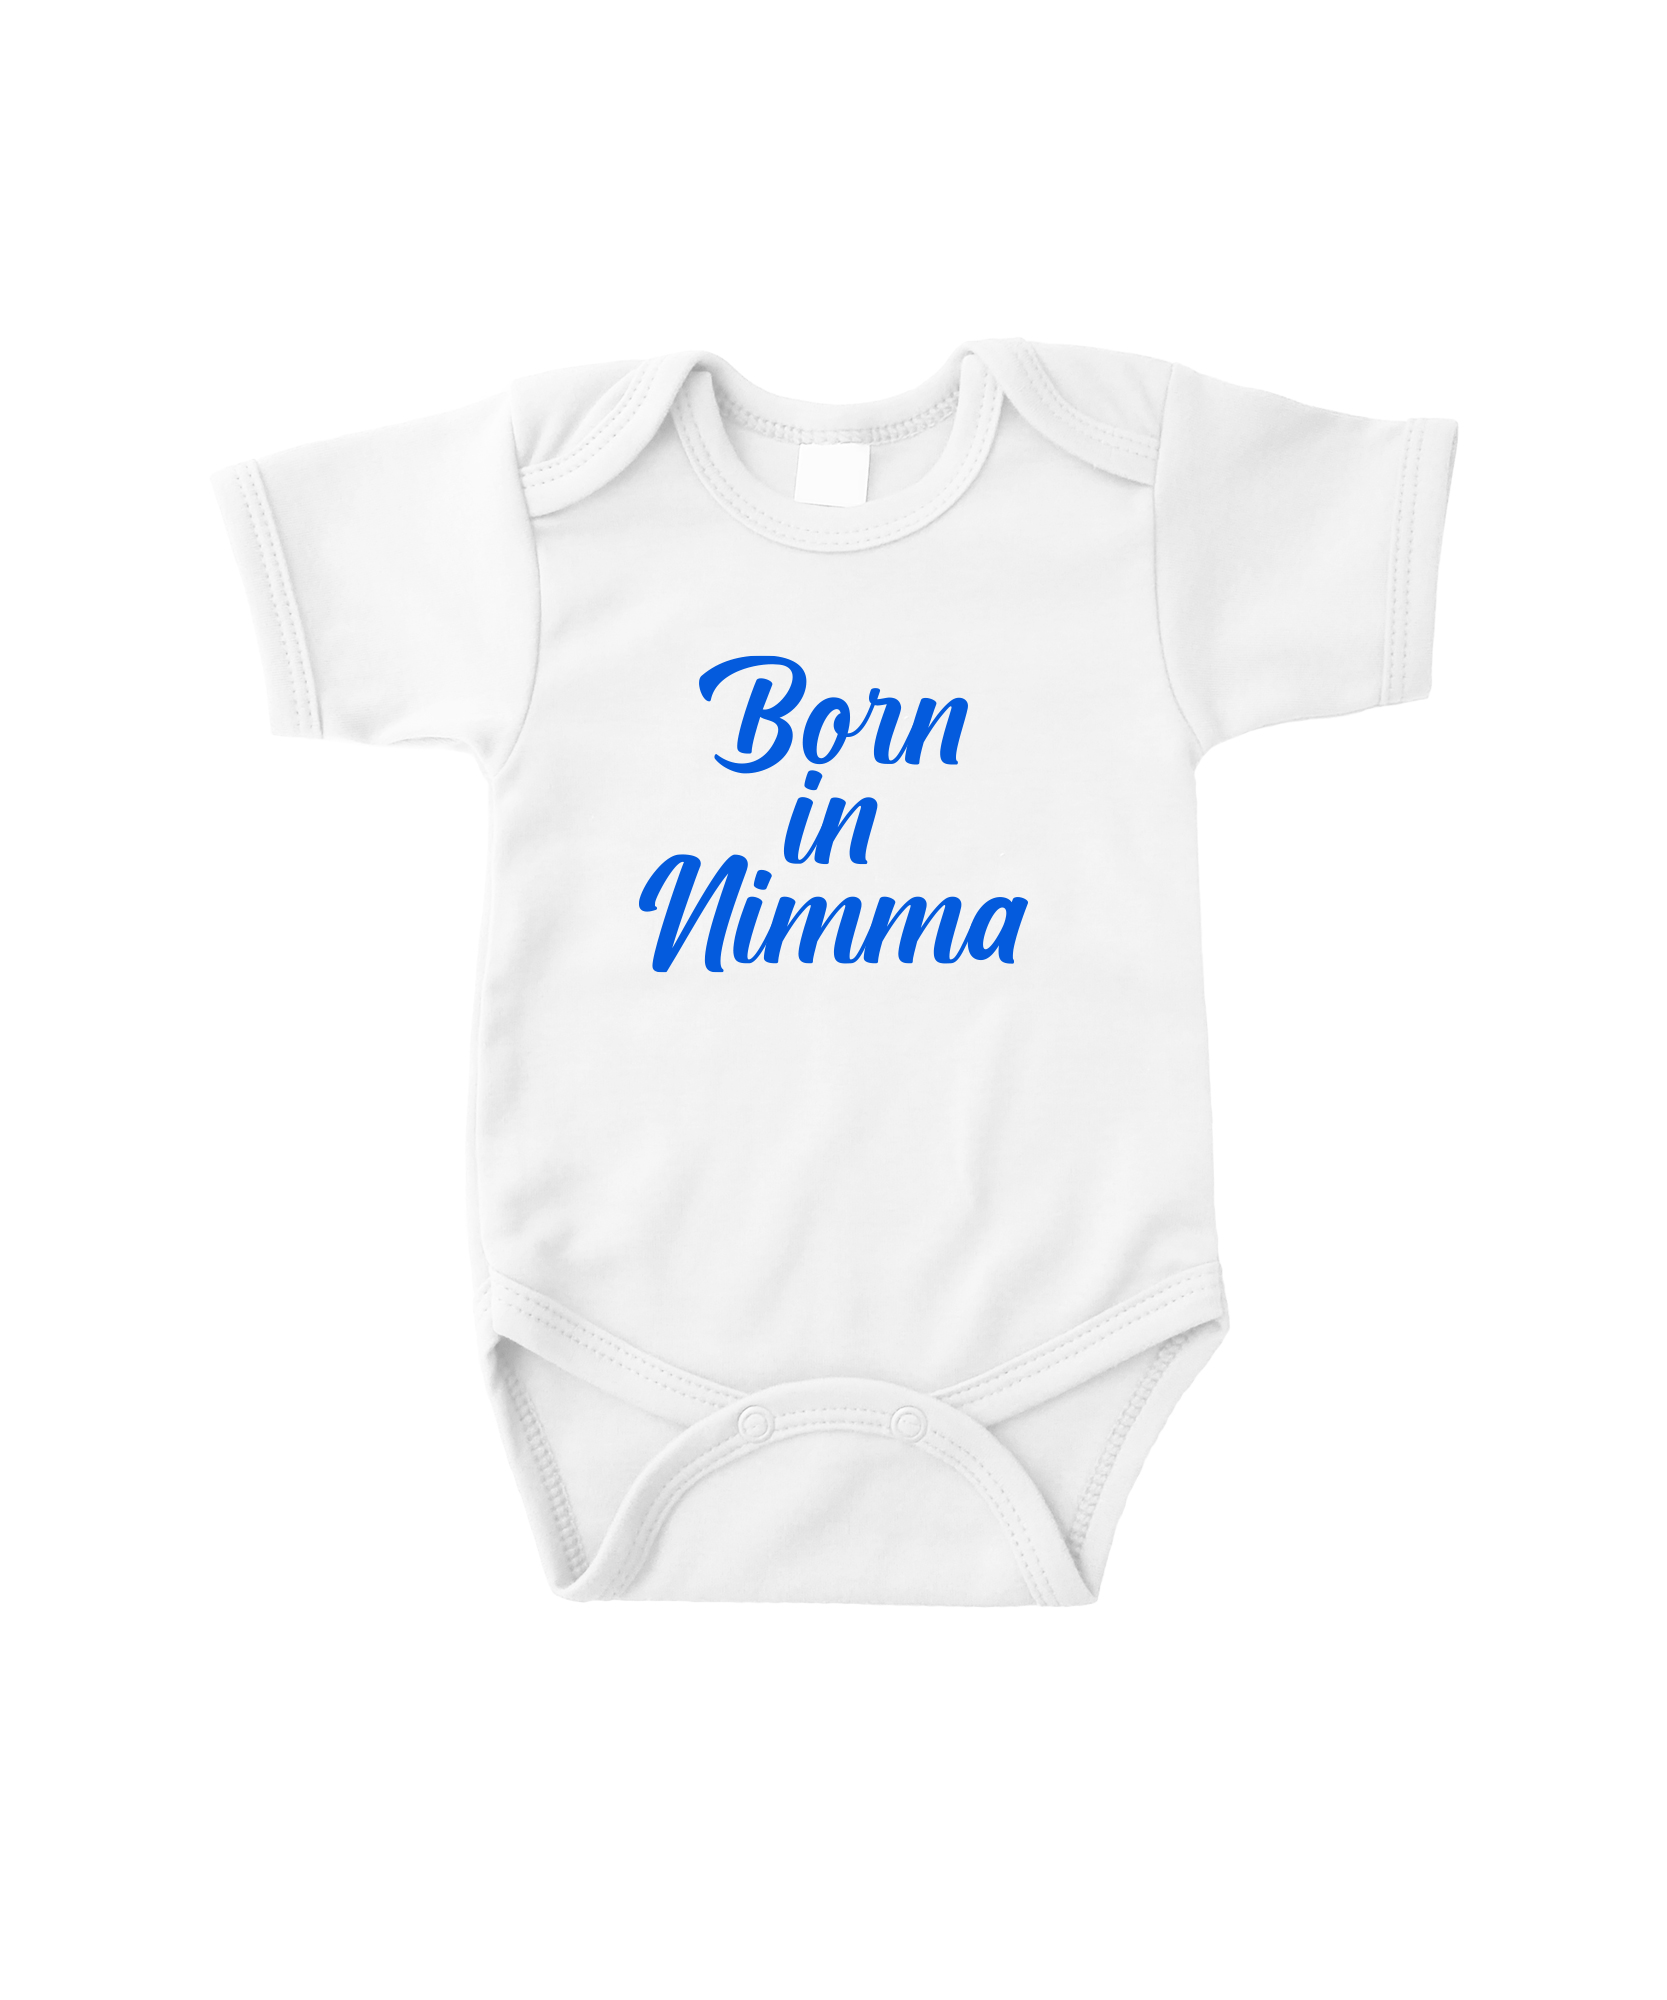 ILOVENIJMEGEN - Romper - Born In Nimma - White/blue